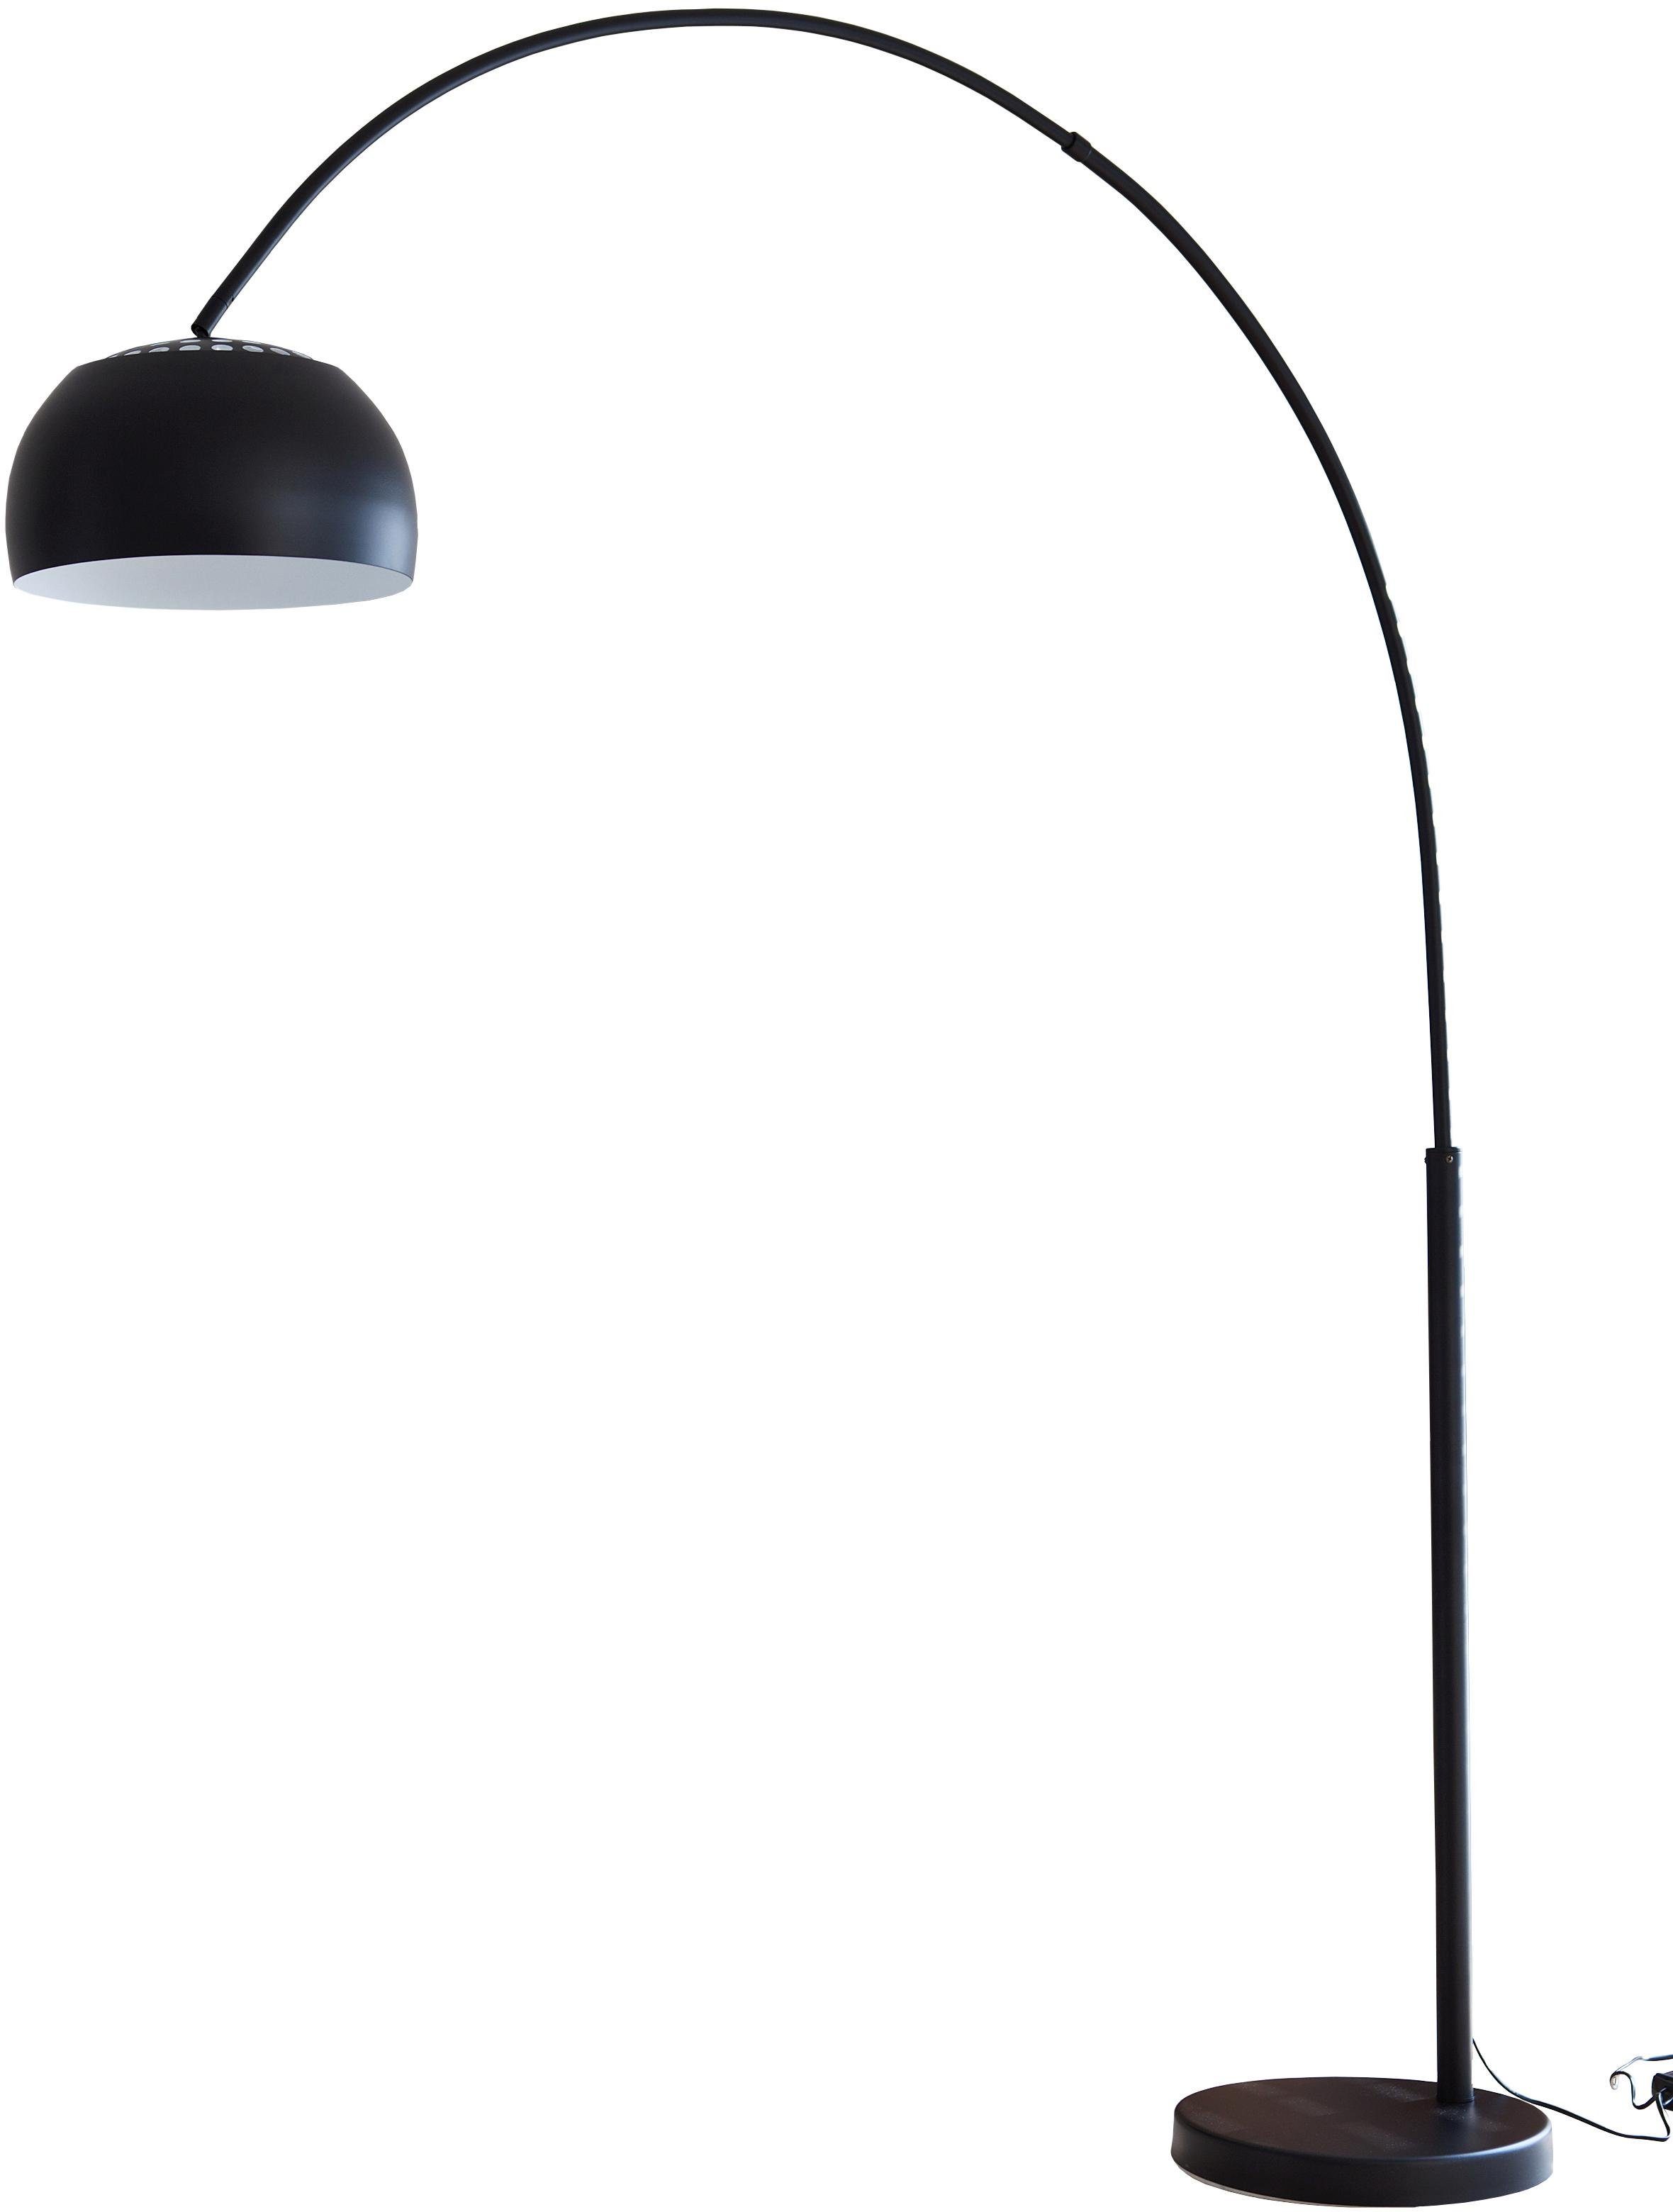 SIT Bogenlampe, mit Dimmer für stimmungsvolles Licht online kaufen | OTTO